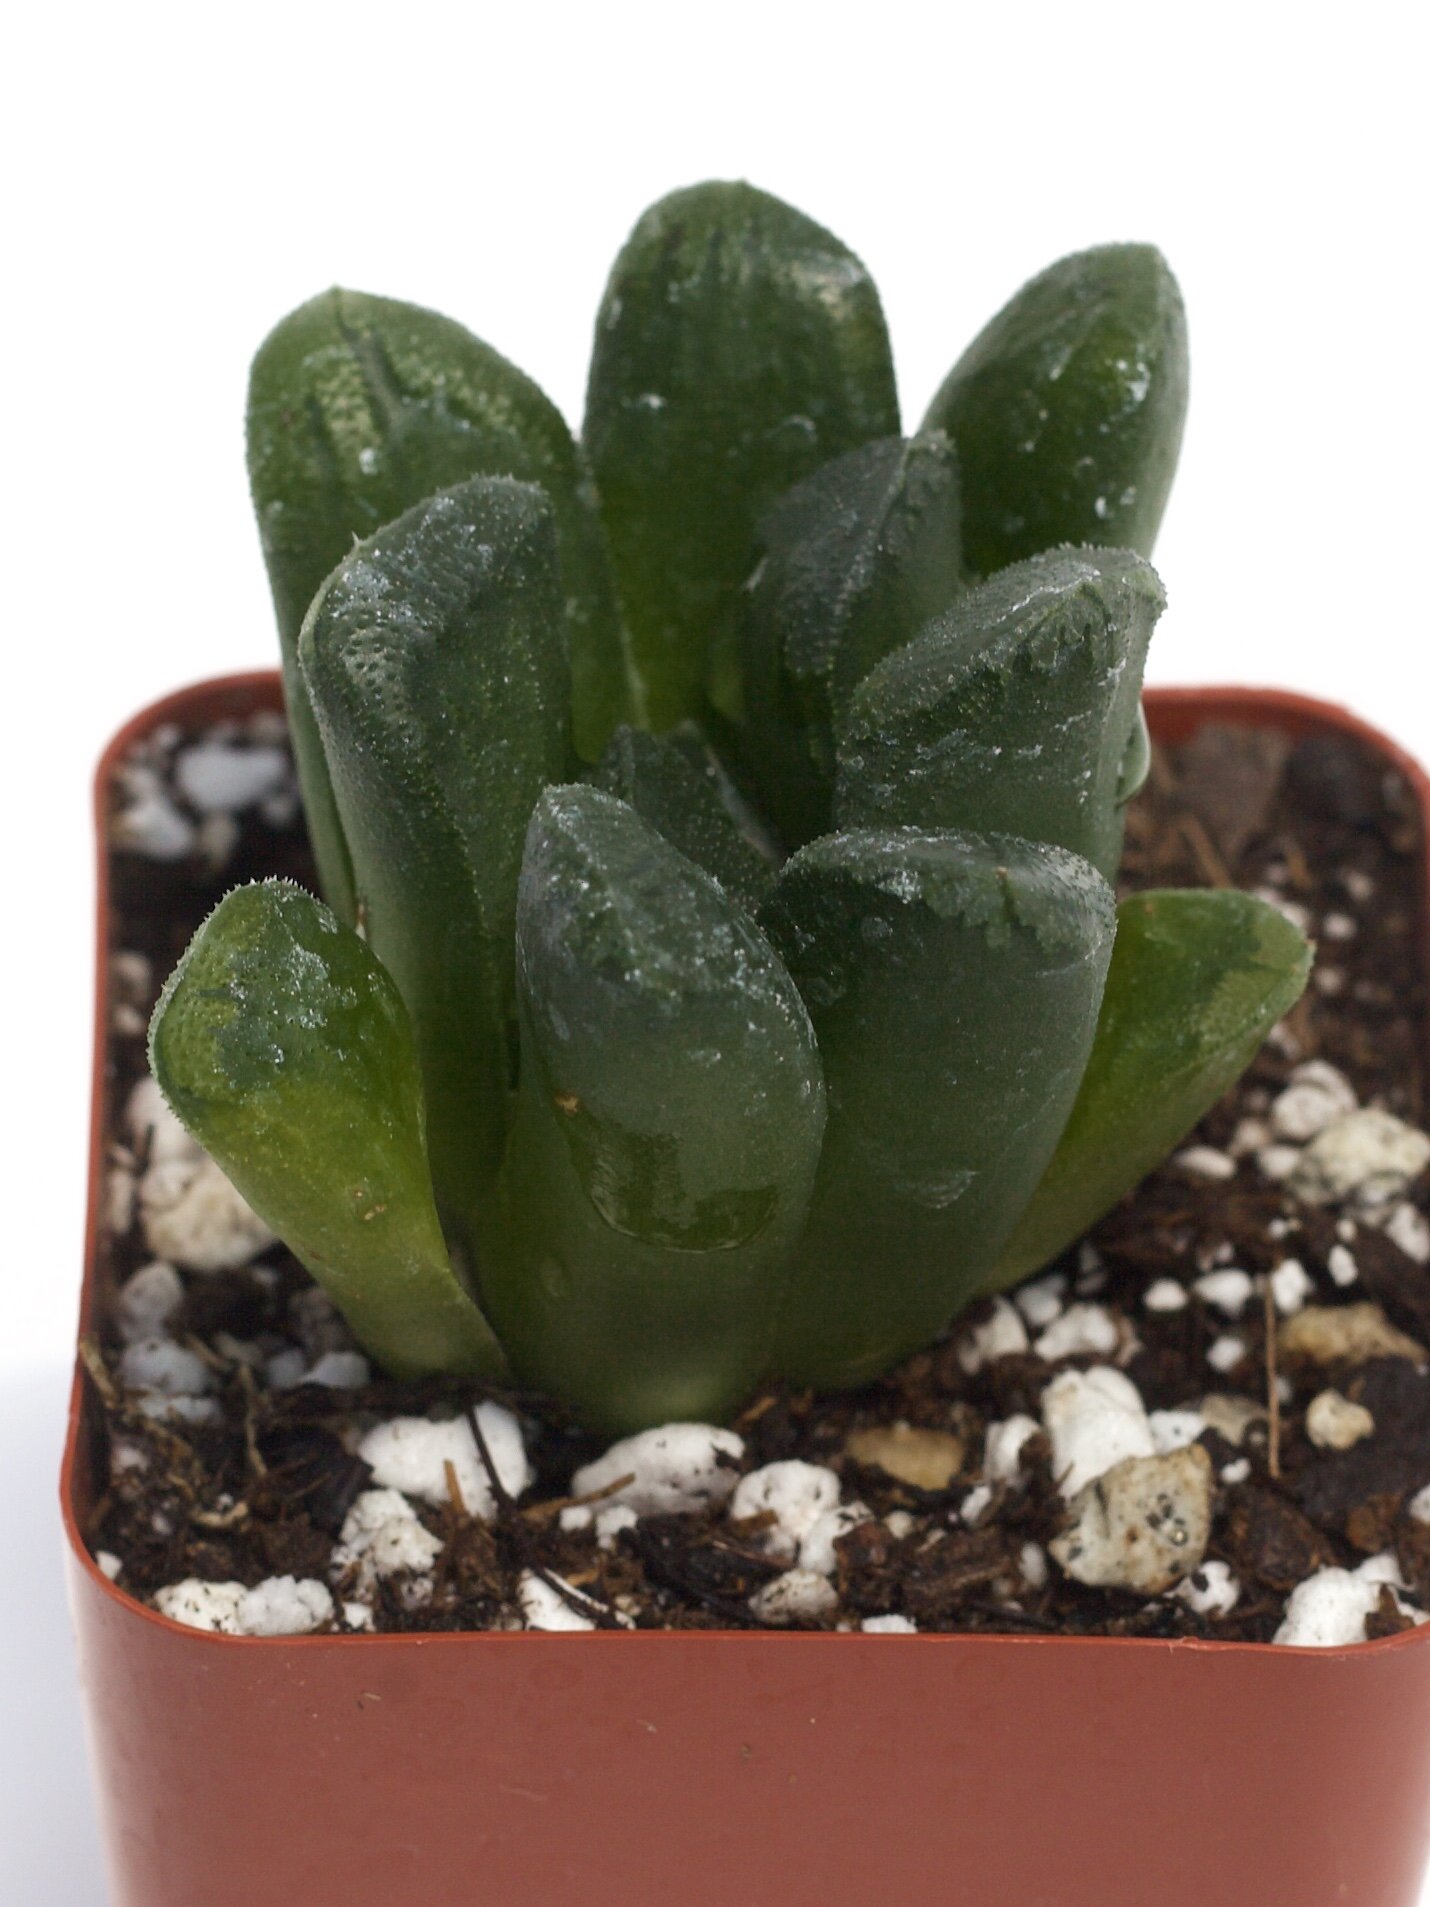 Haworthia Truncata 'Araiso' Rare Succulent Plant Size Around 1.5-2" 